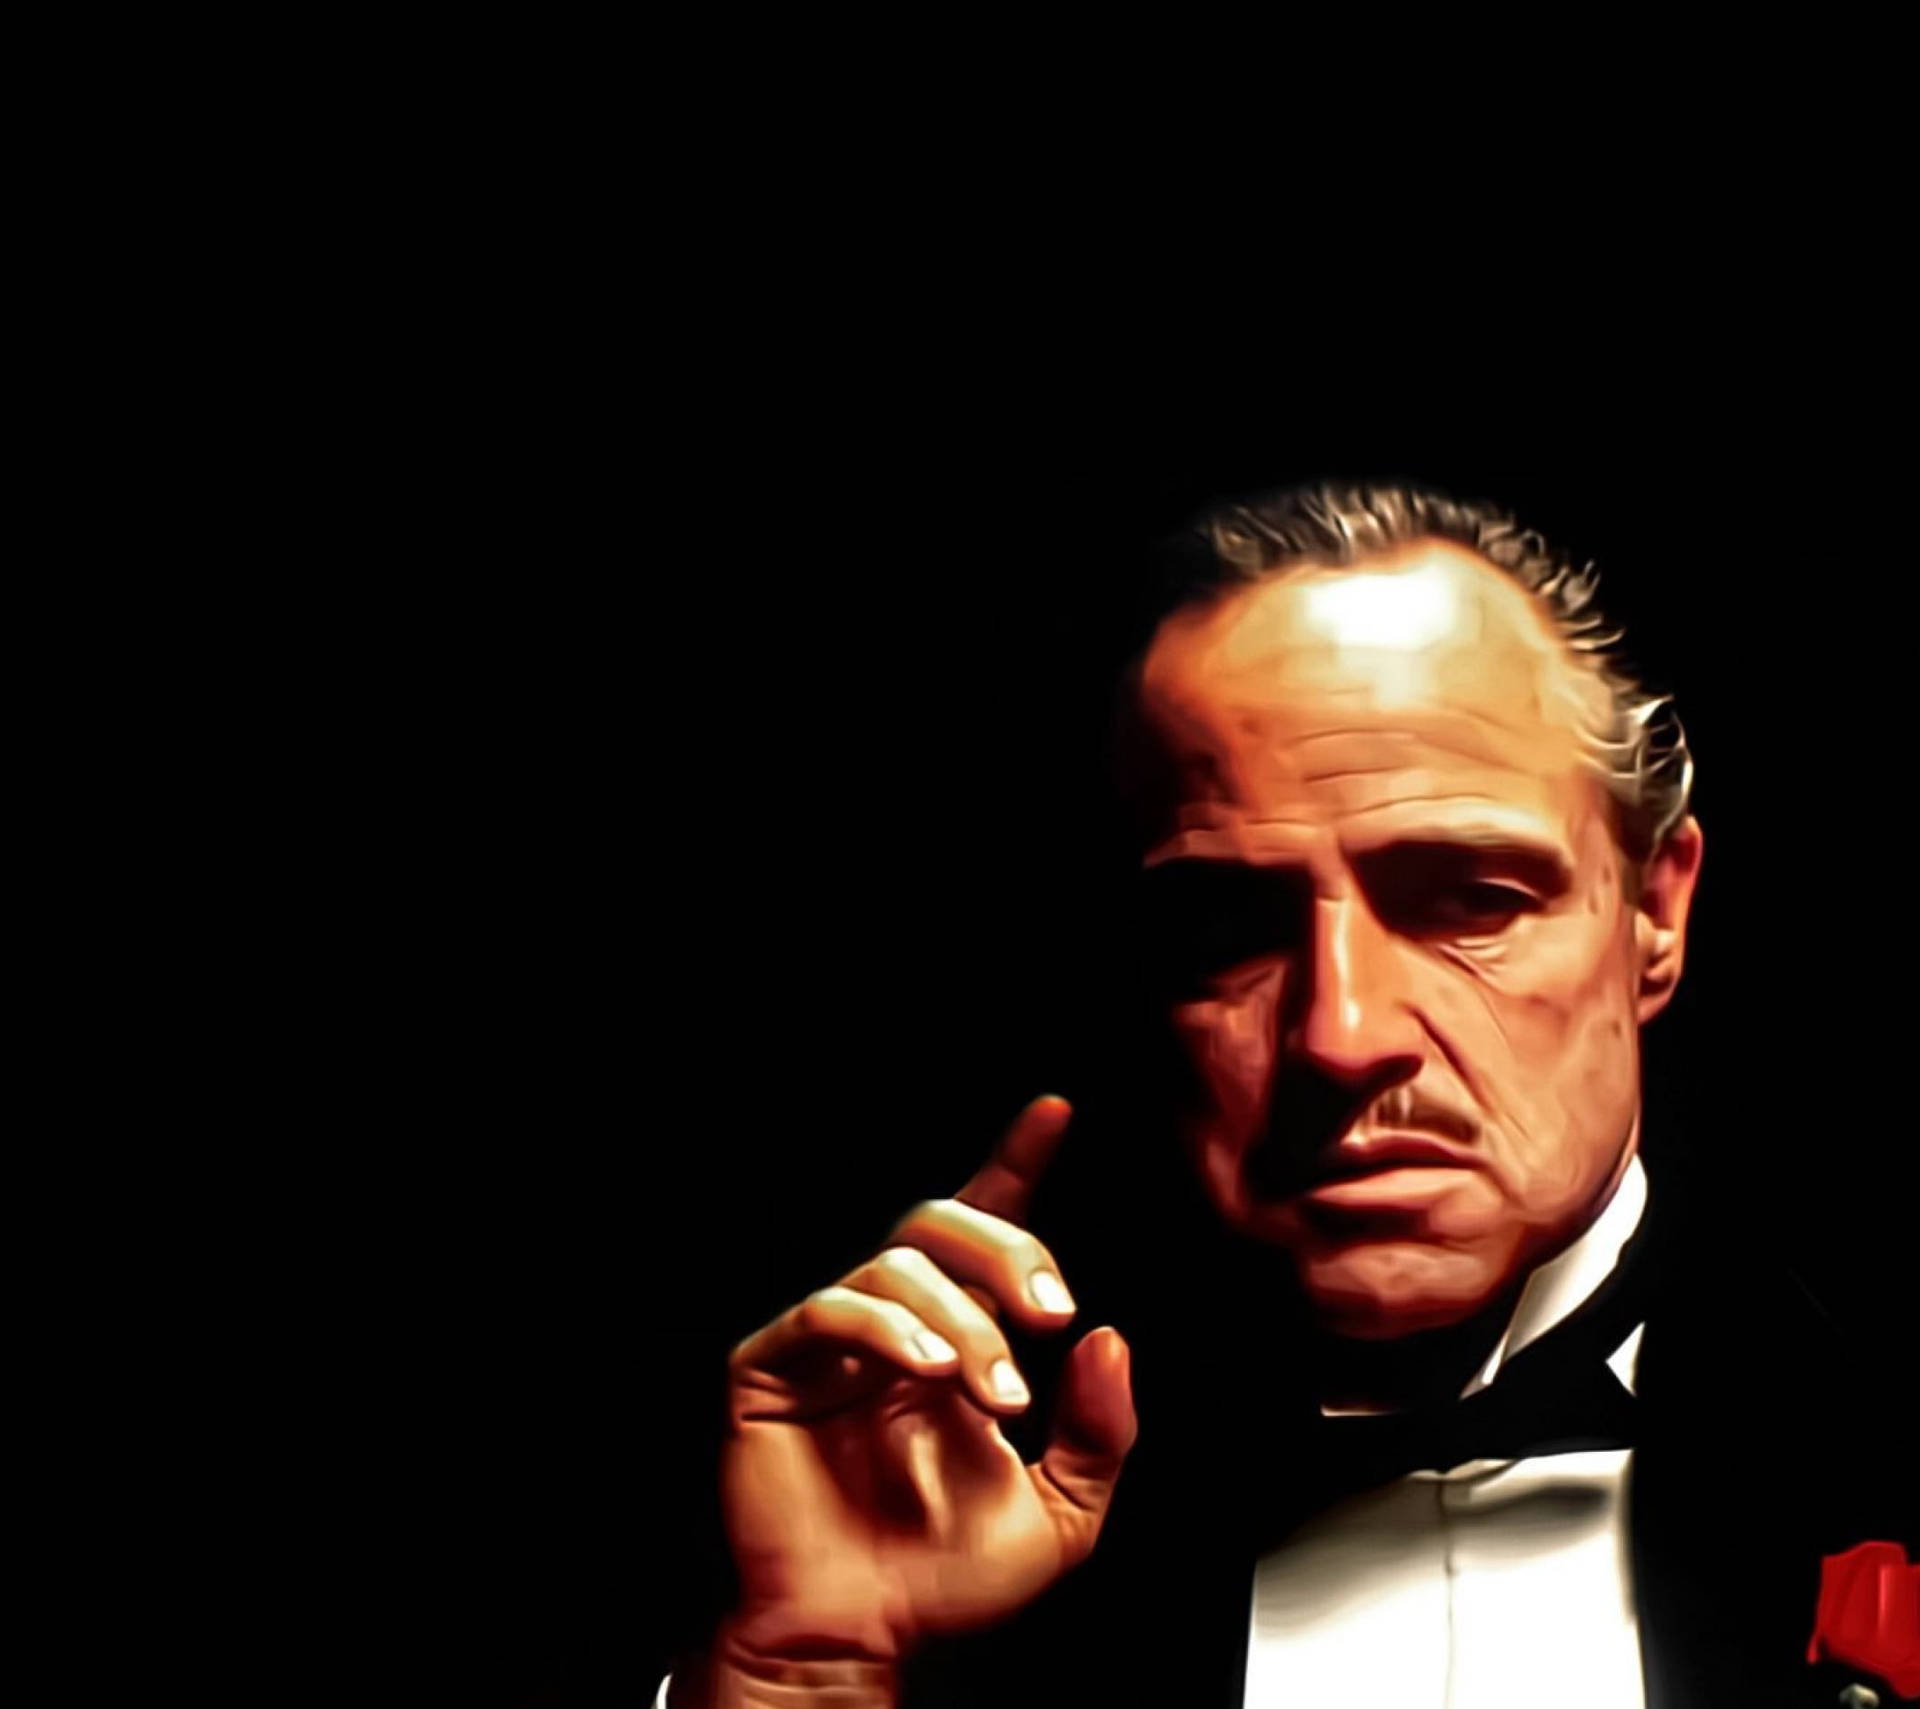 Colored The Godfather Mafia Boss Wallpaper